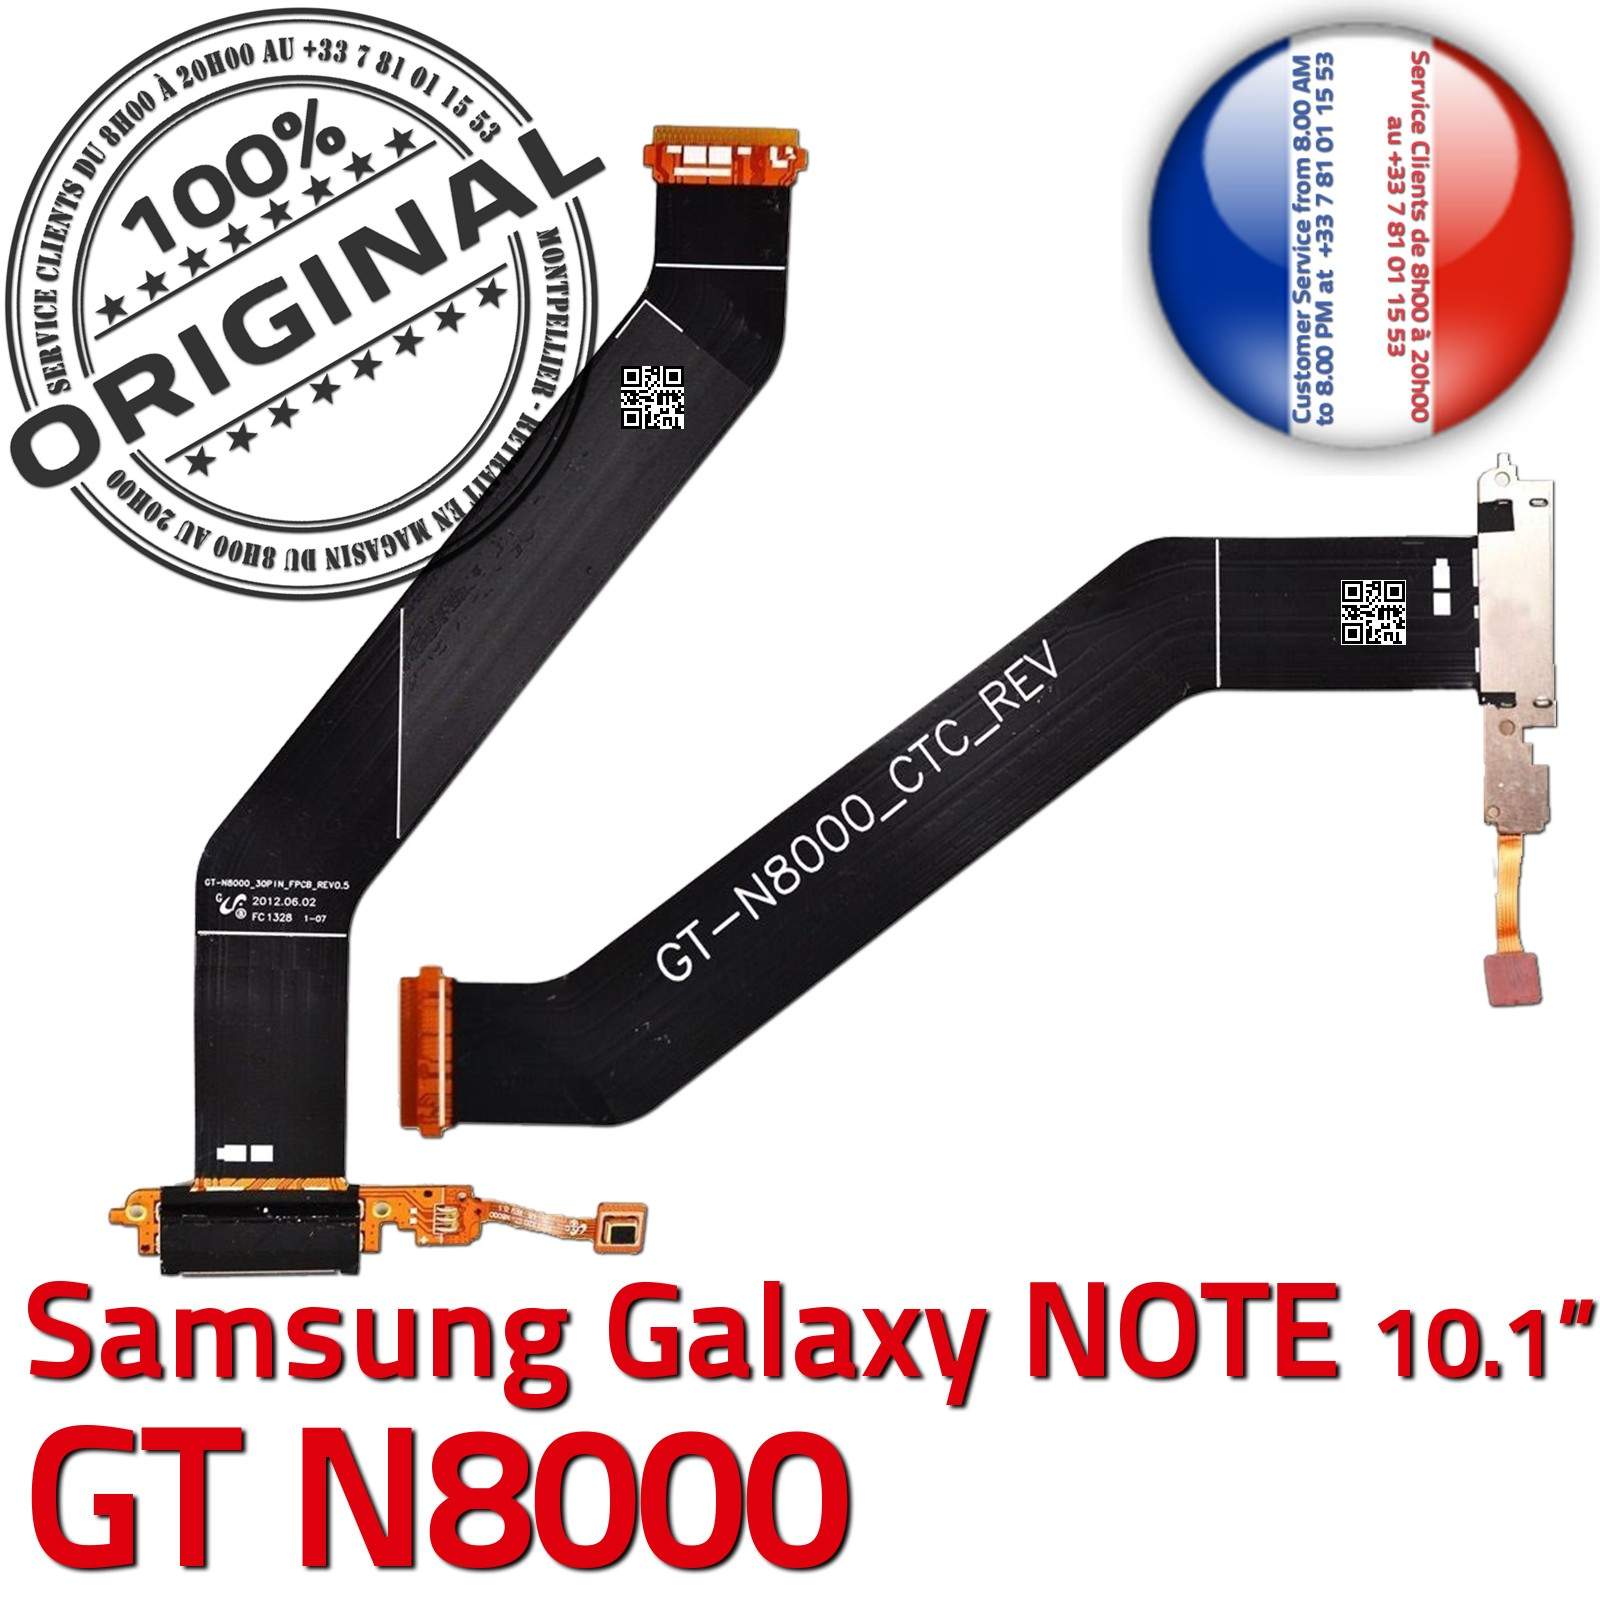 ORIGINAL Samsung Galaxy NOTE GT N8000 Connecteur de Charge Micro USB Nappe Chargeur OFFICIELLE Qualité Contacts Dorés Réparation